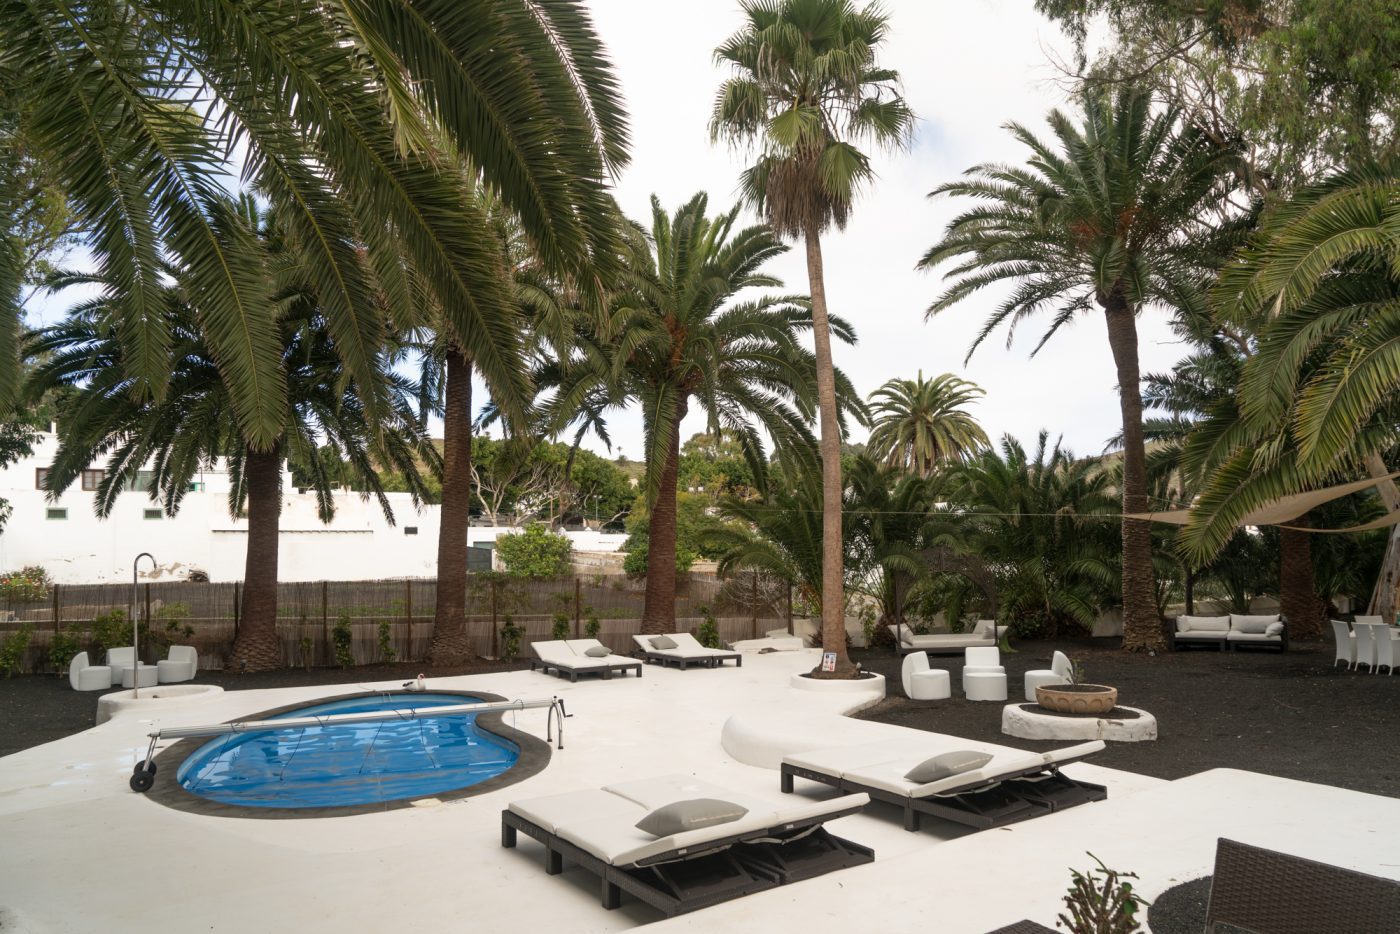 Villa Delmas garden and pool, designed by Cesar Manrique